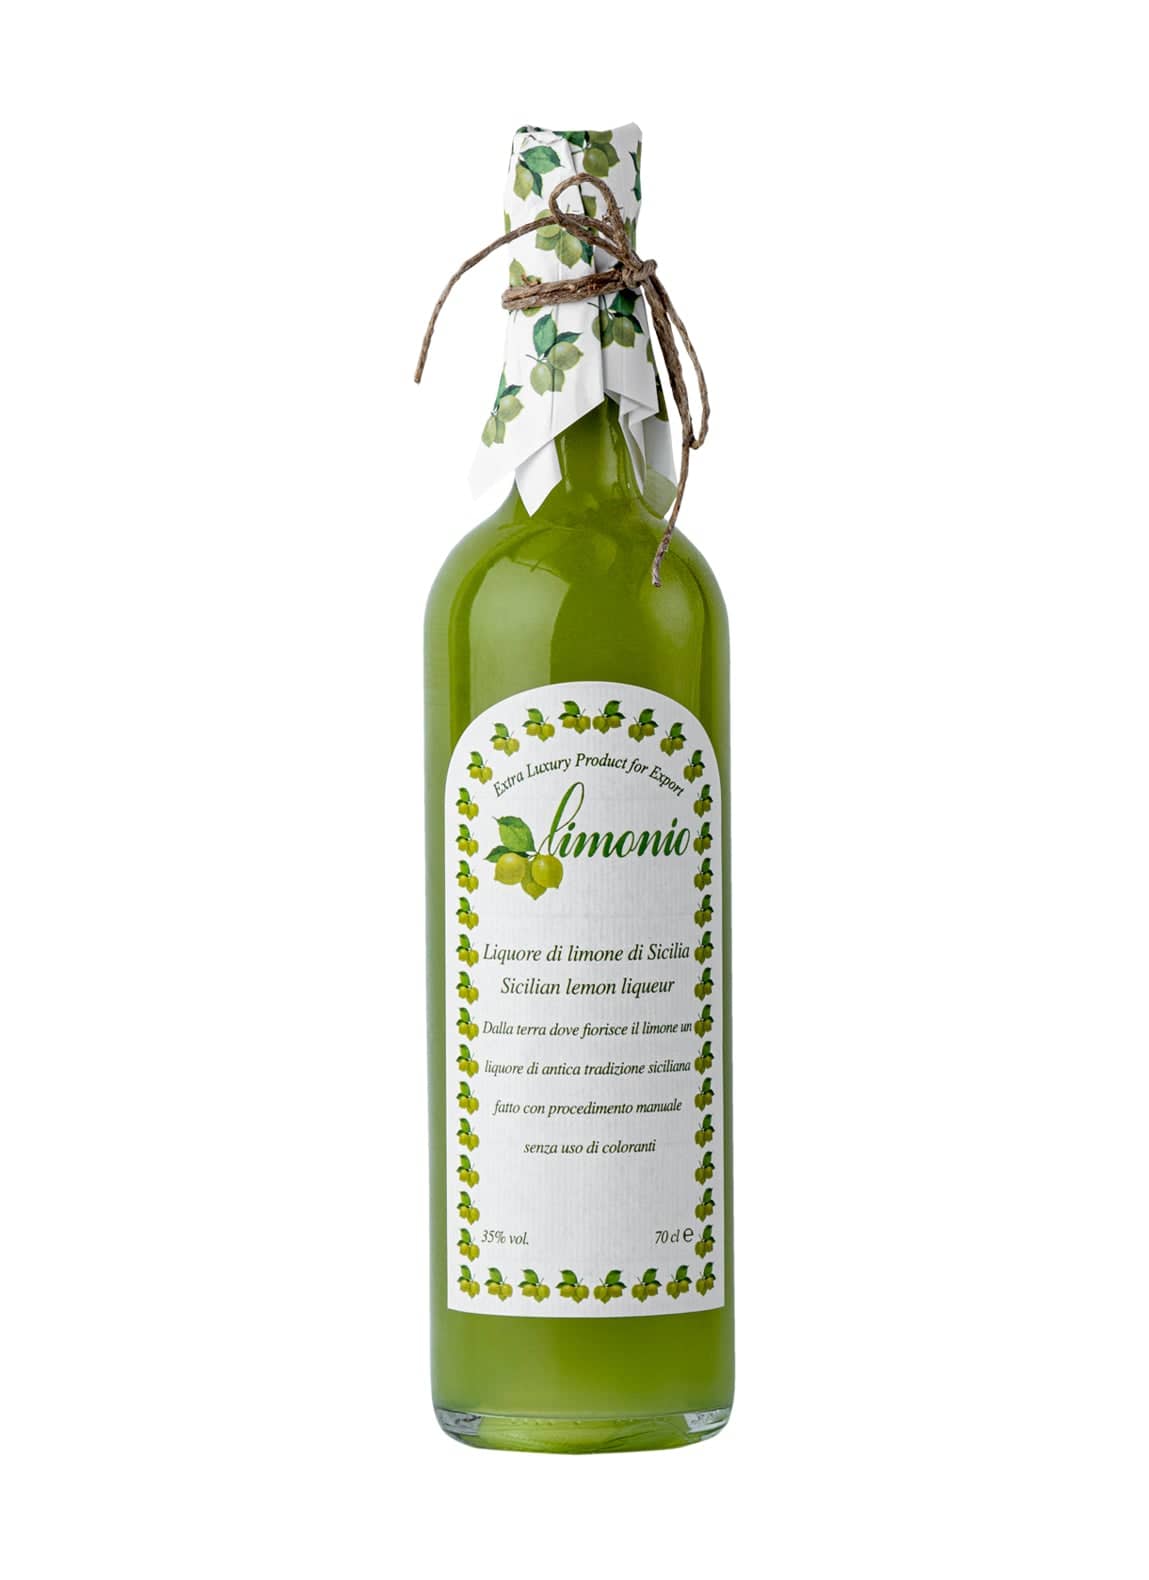 Limonio Limoncello Lemon liqueur 35% 700ml | Liqueurs | Shop online at Spirits of France